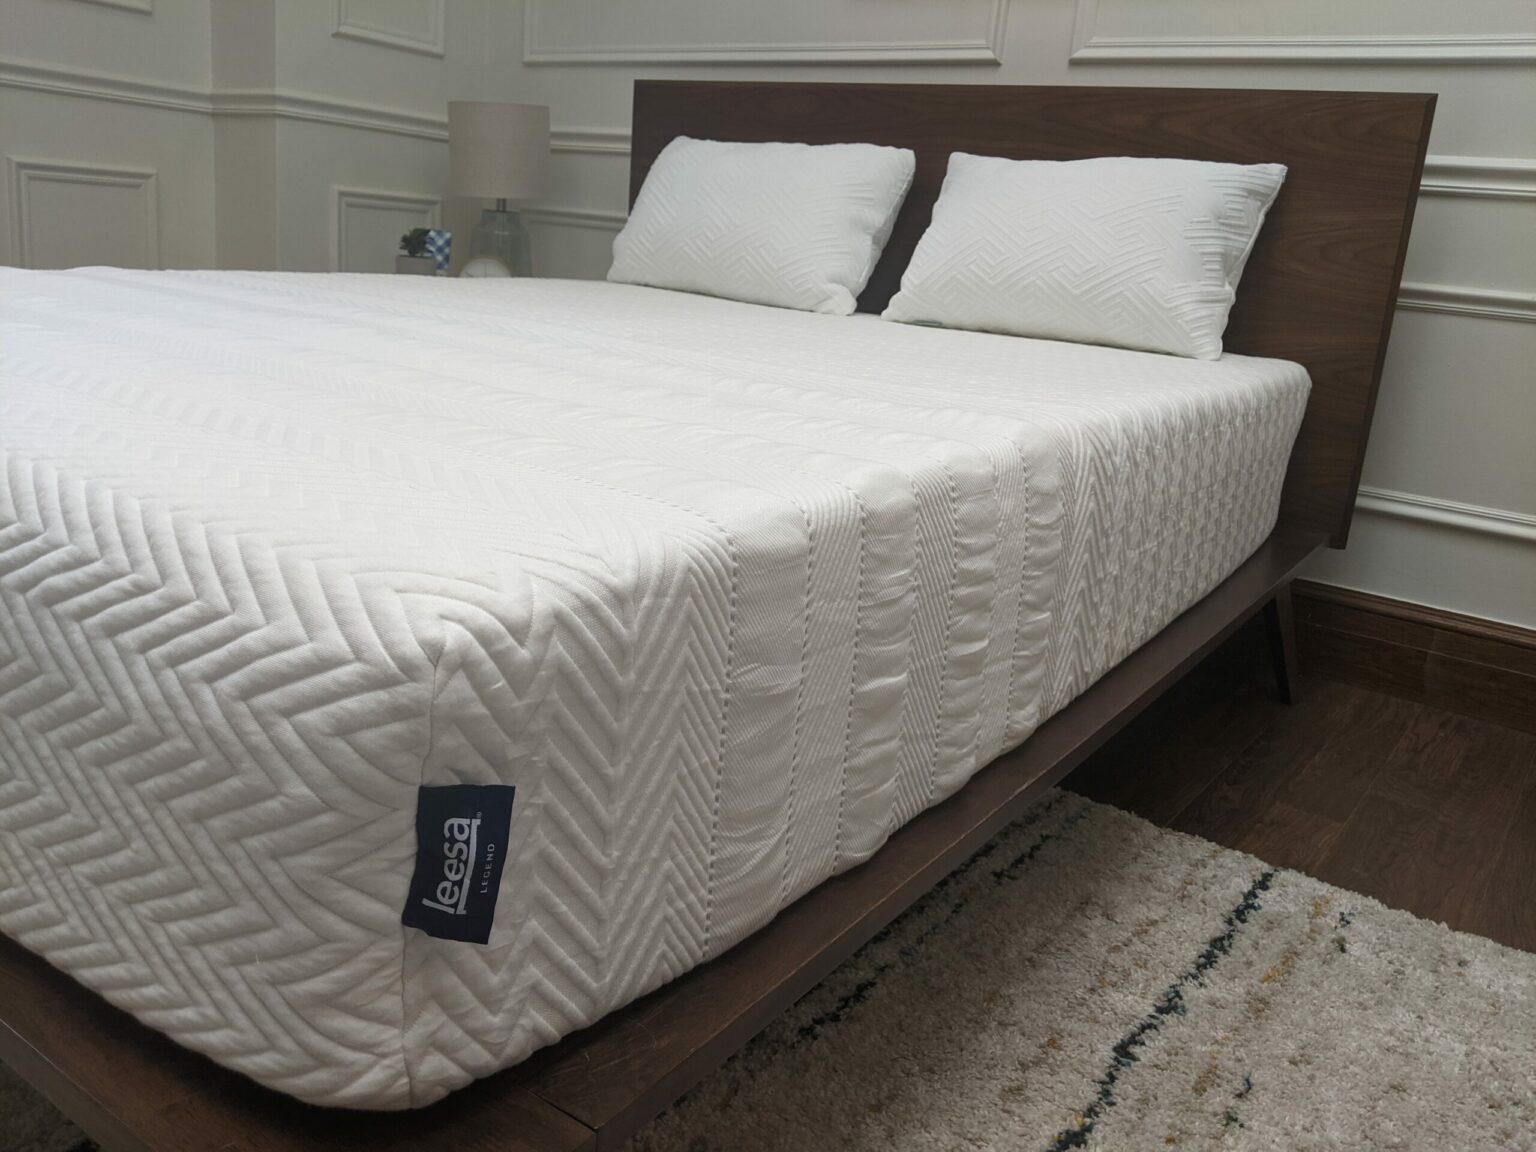 leesa legend 12 hybrid mattress medium firm review